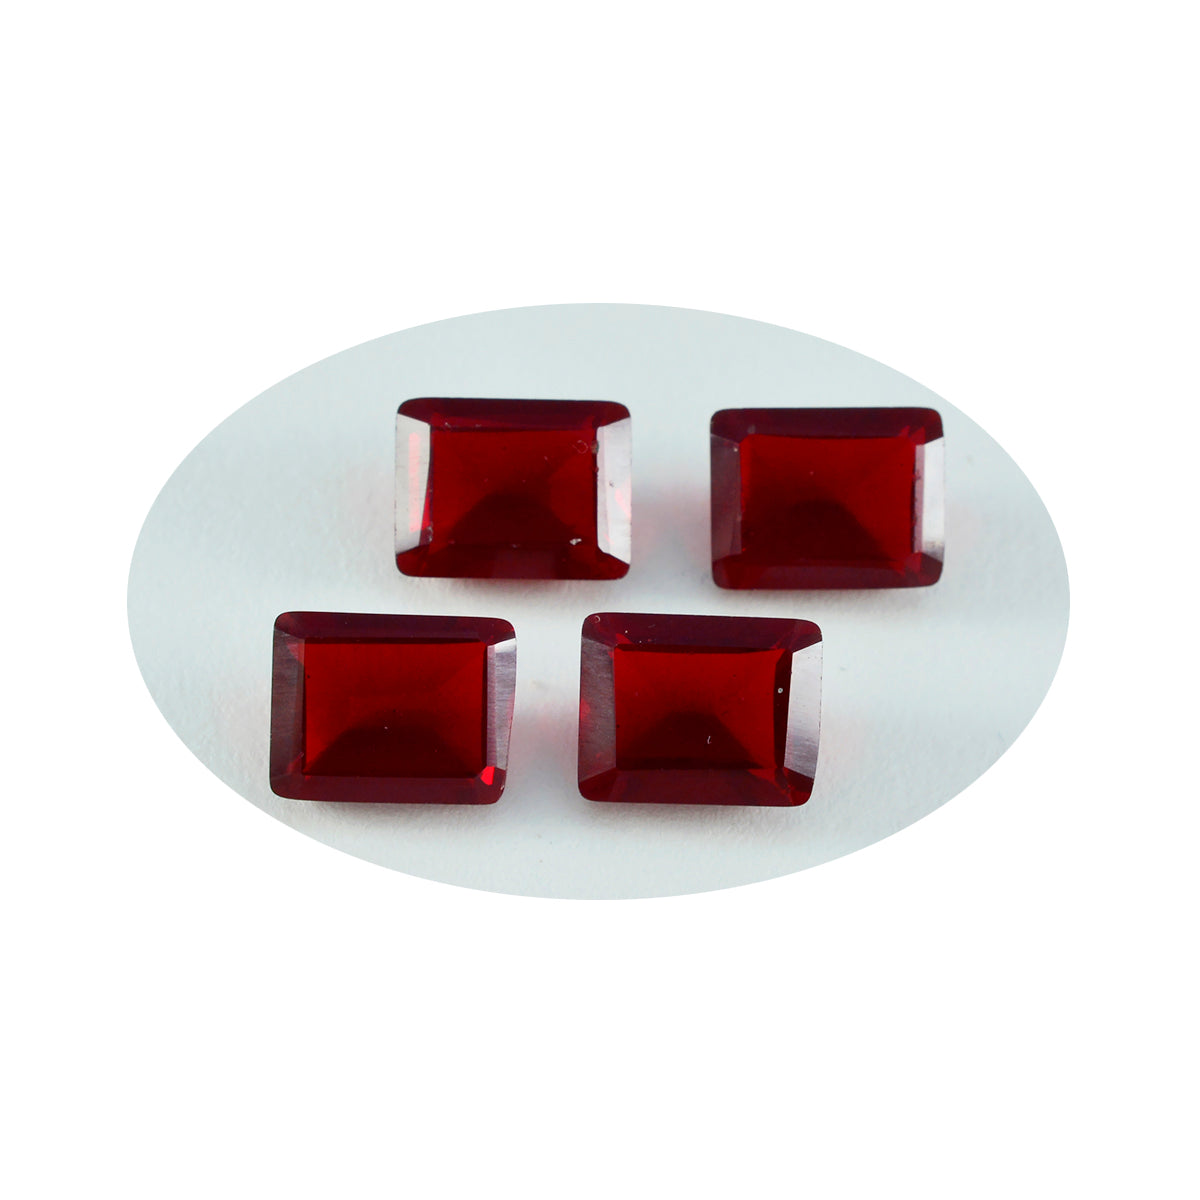 Riyogems 1PC Red Ruby CZ gefacetteerd 10x12 mm achthoekige vorm mooie kwaliteit losse edelstenen